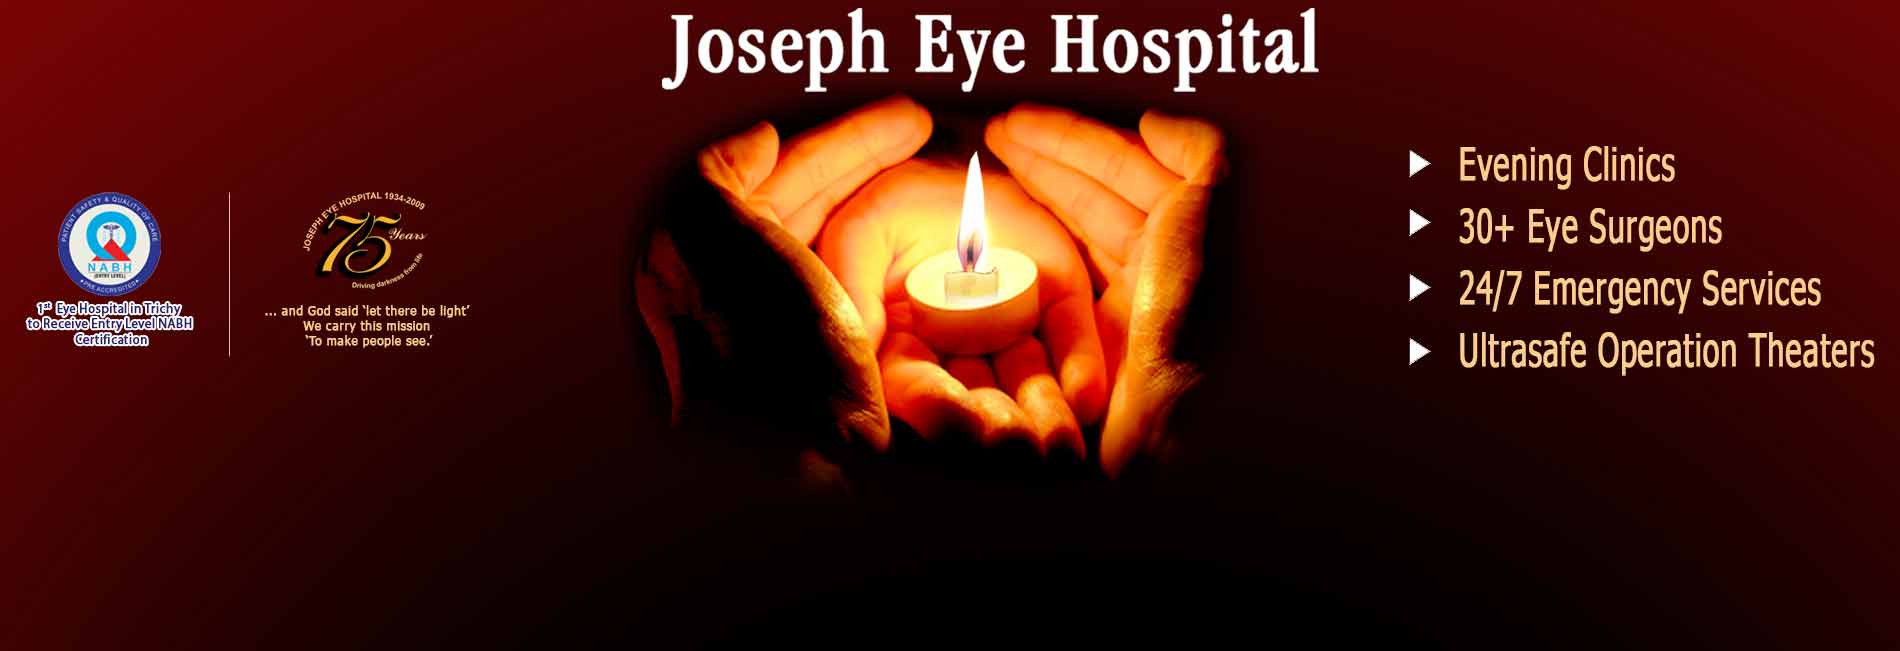 Joseph Eye Hospital Slider1